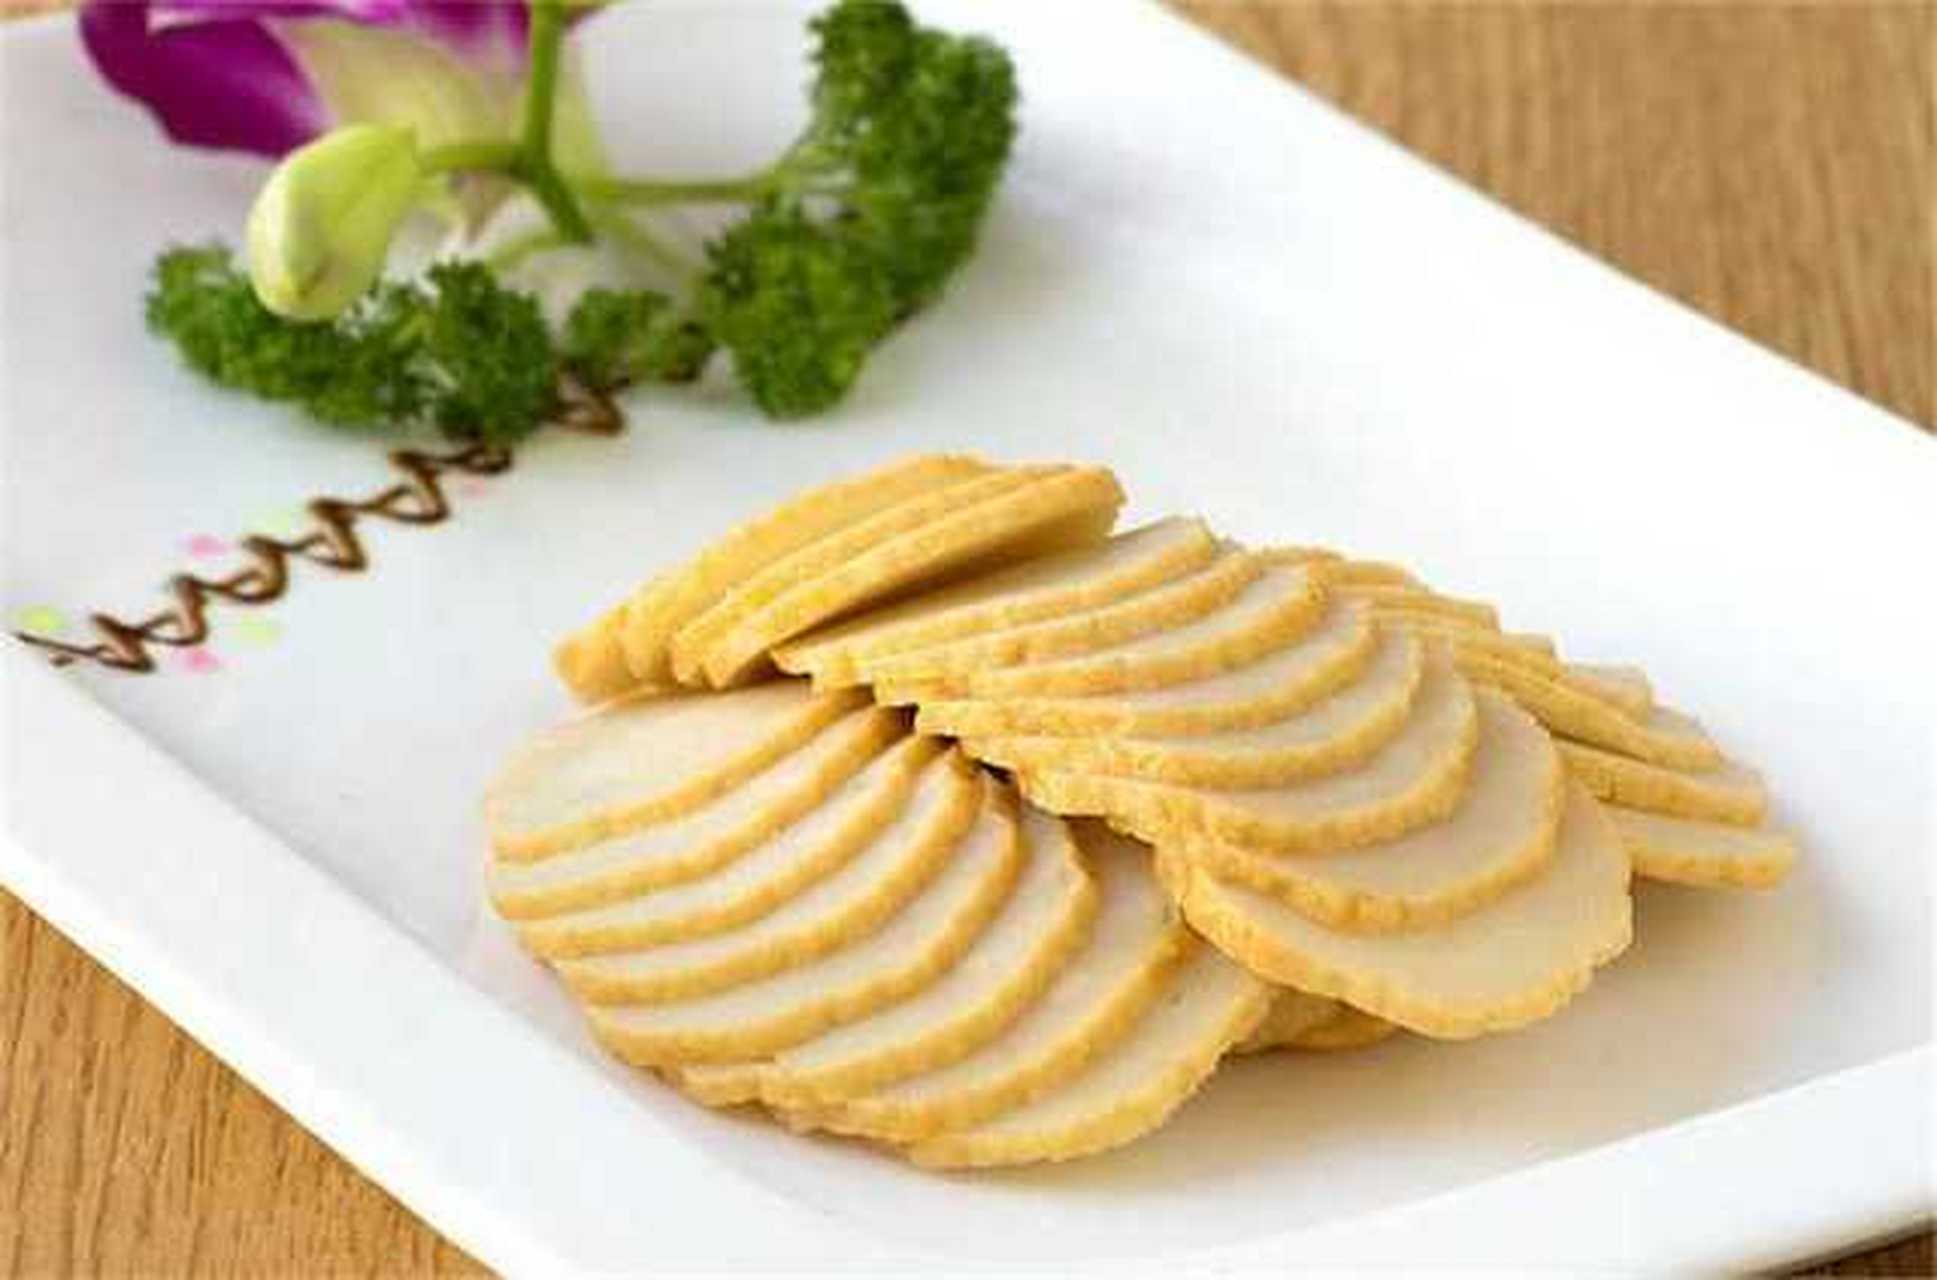 鱼饼有上千年的历史,长期以来只在皇宫贵族的御宴中流行